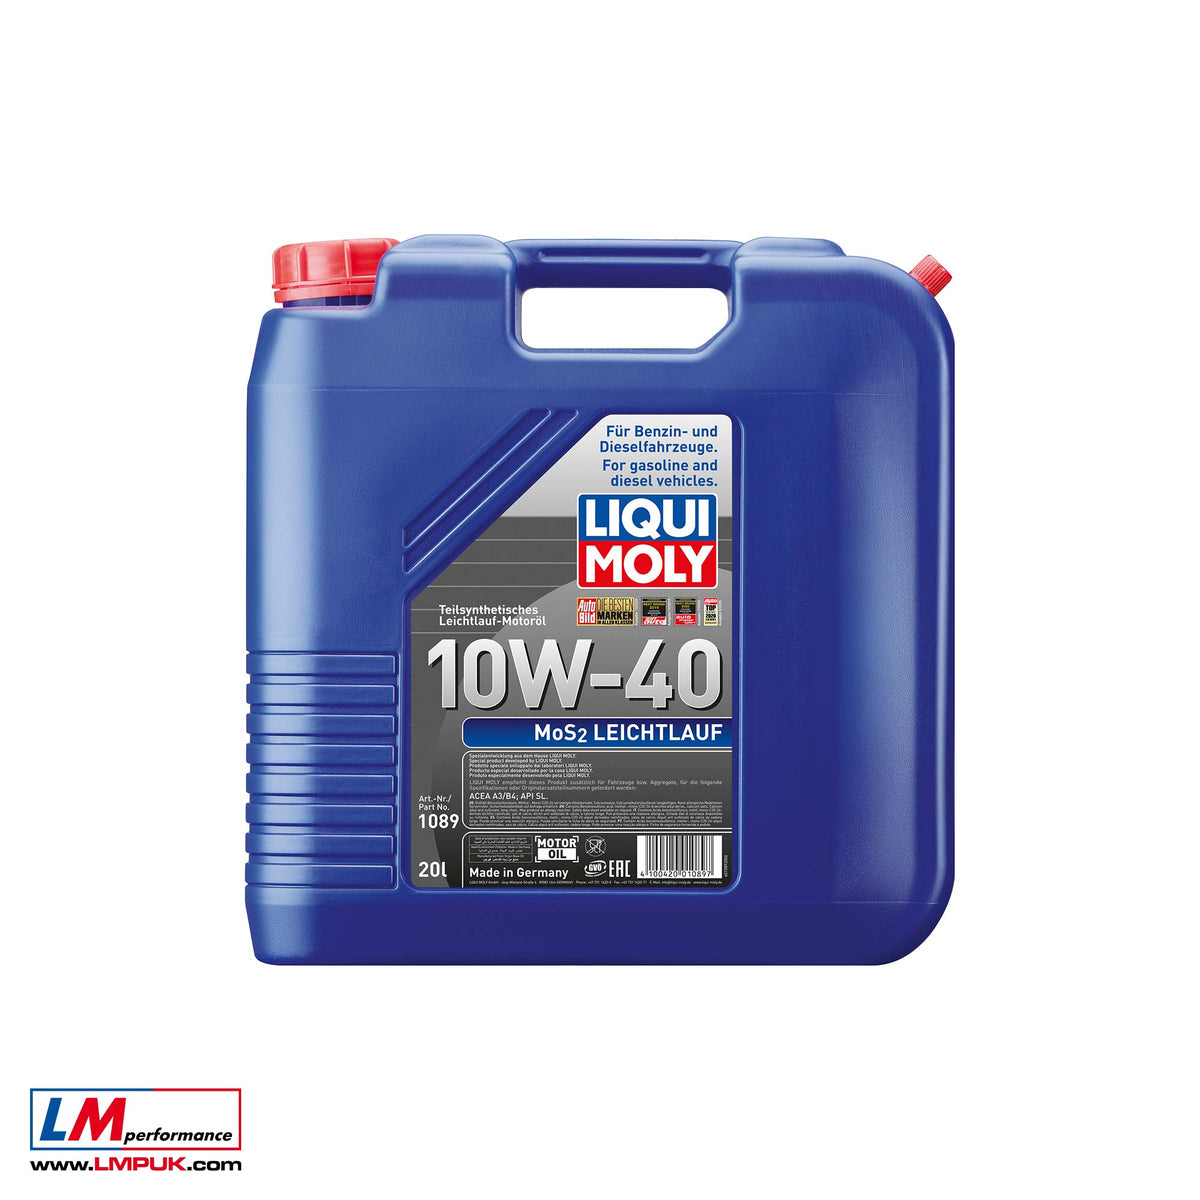 Liqui Moly Motor-Öl Mos2-Leichtlauf 10W-40 5 L, 5L